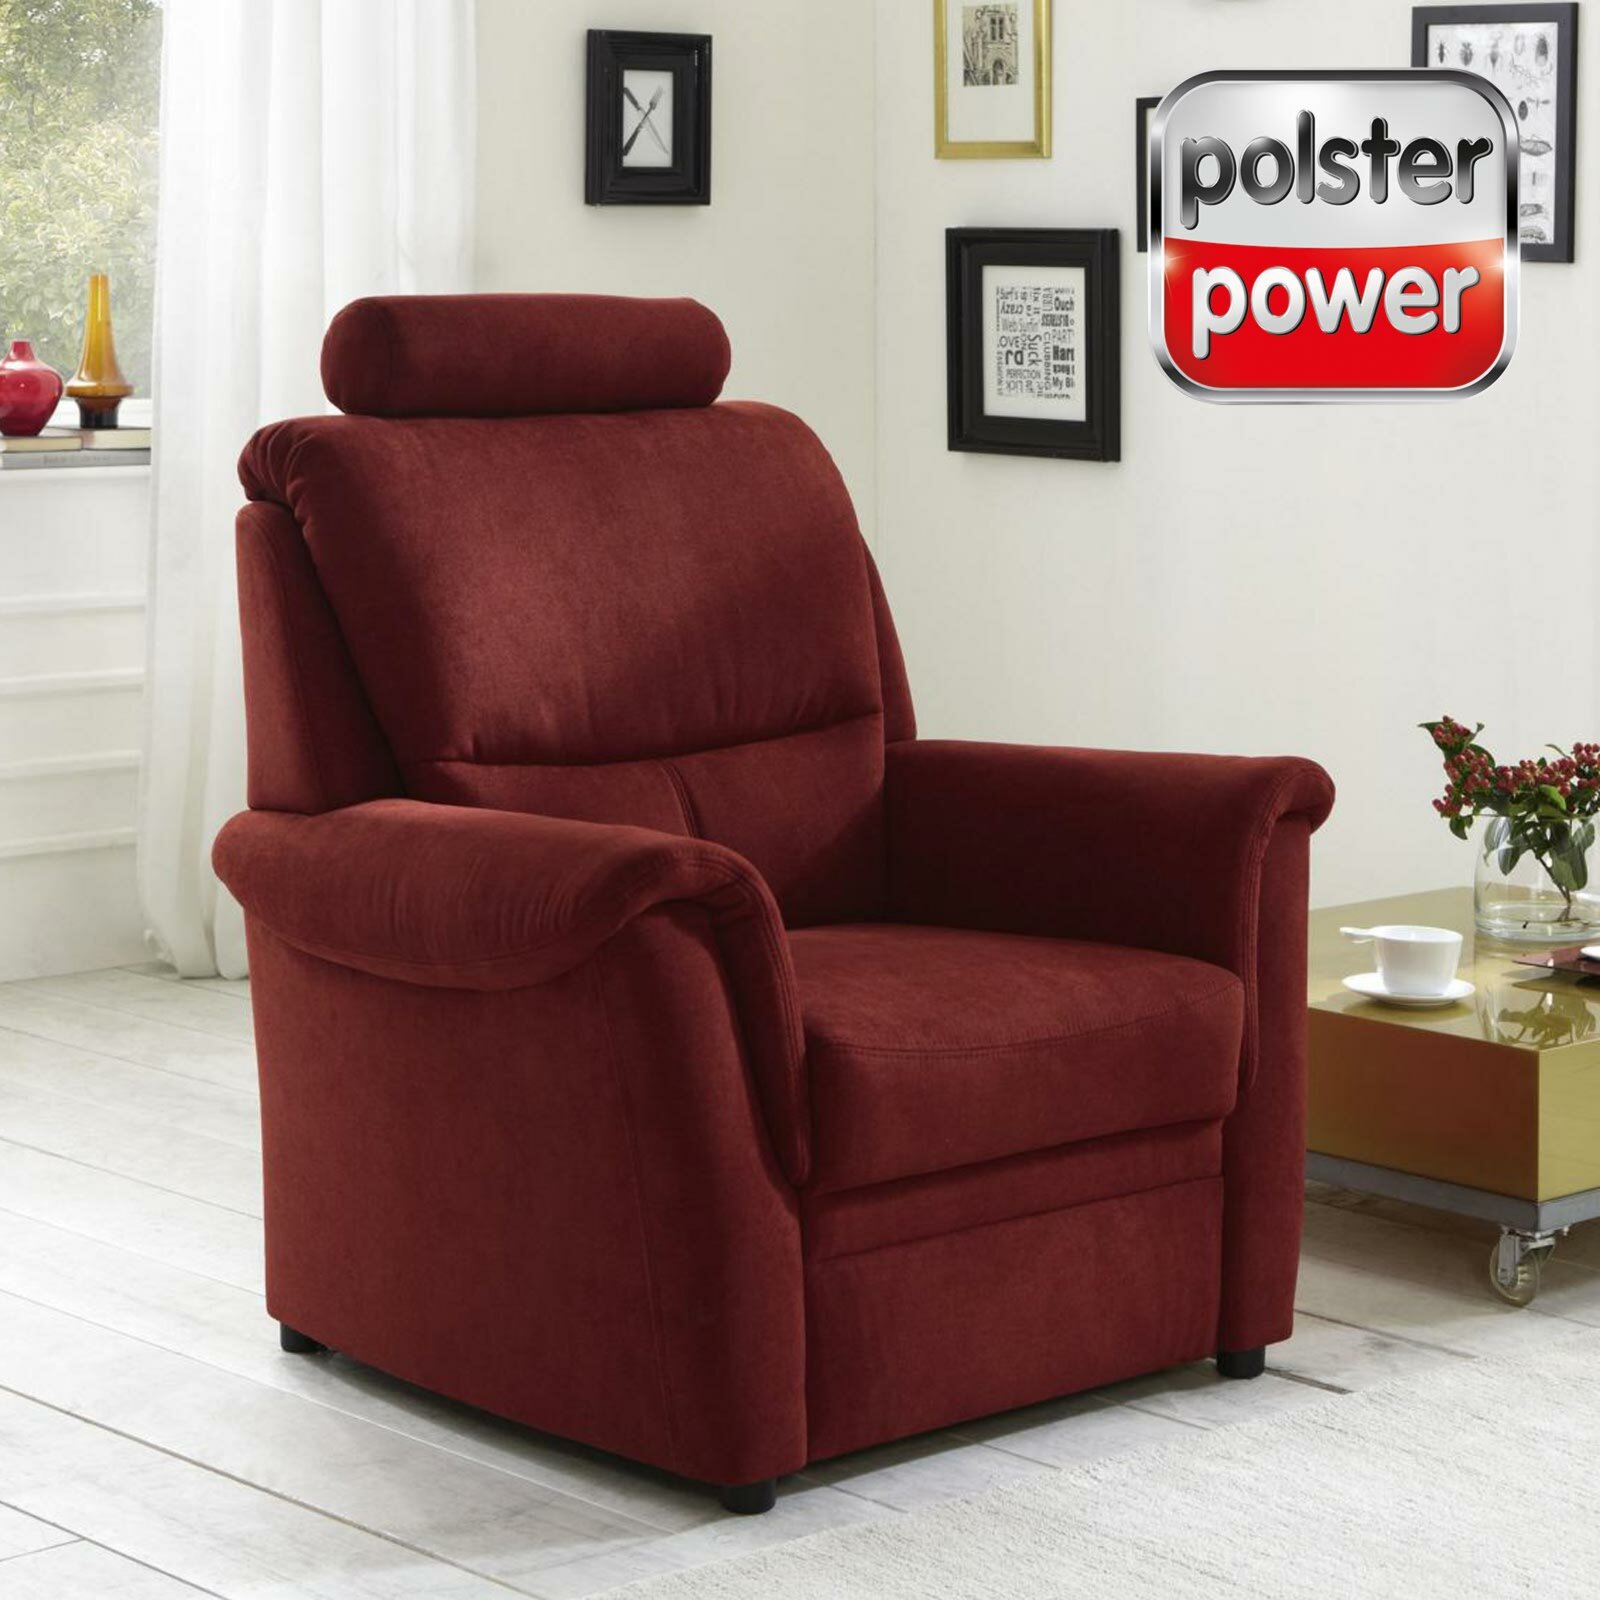 polsterpower Sessel - bordeaux - Microchenille | Online bei ROLLER kaufen